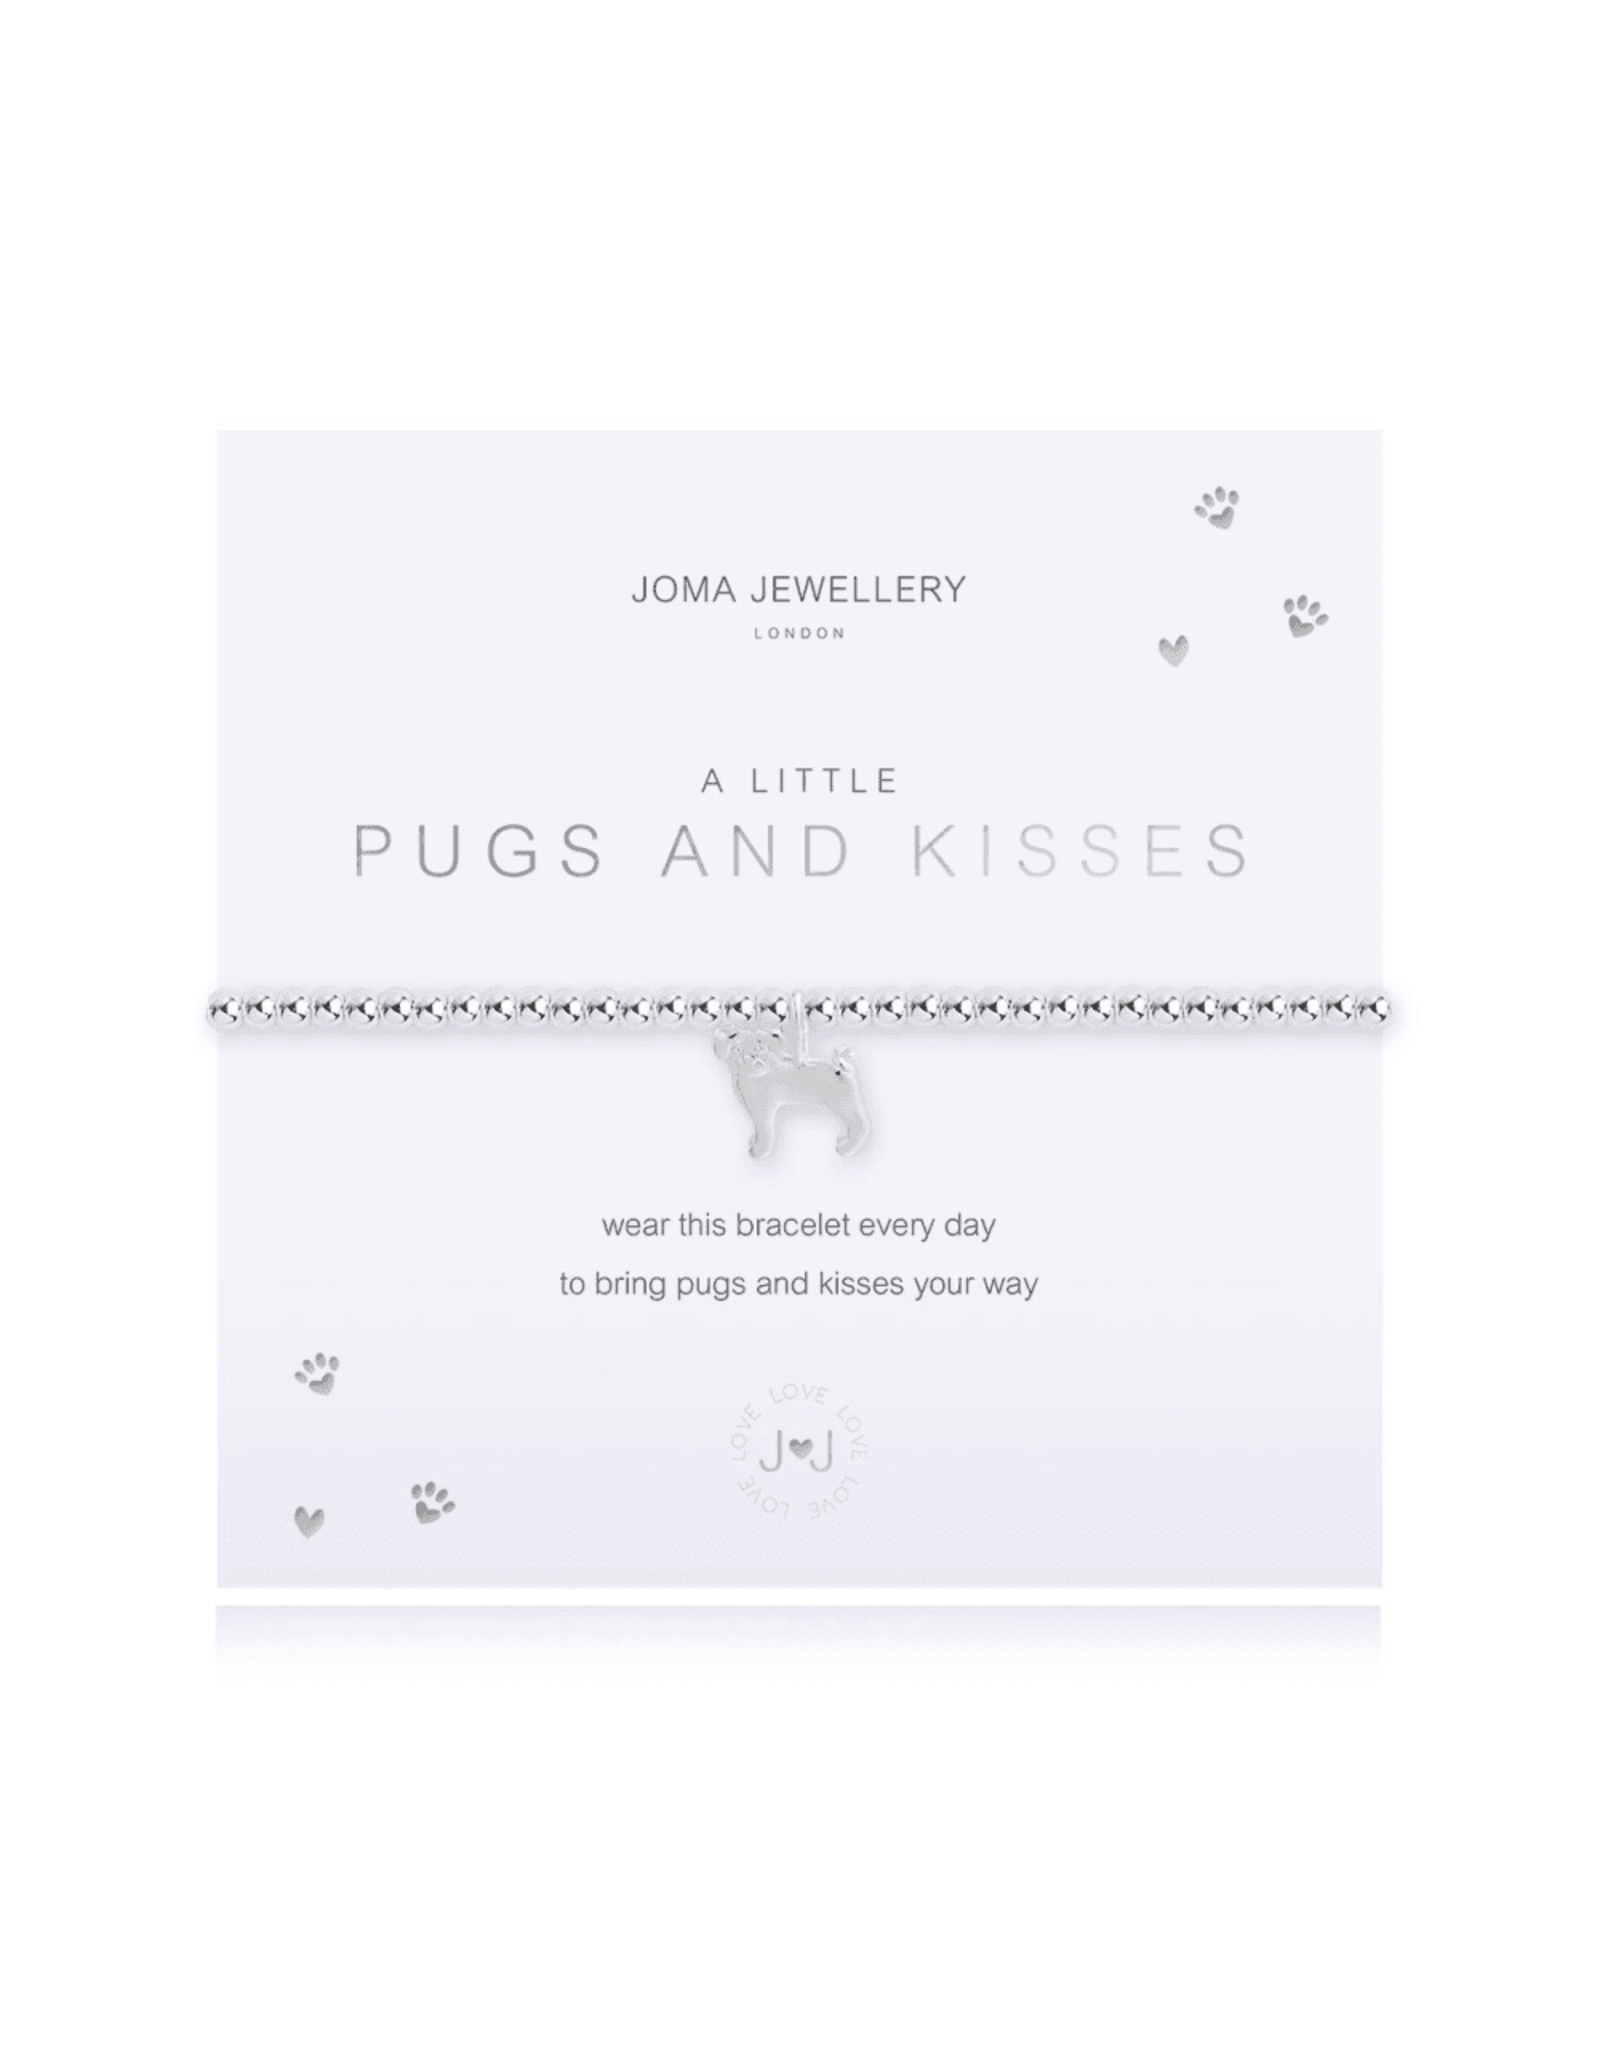 Joma Jewellery A Little - Pugs & Kisses